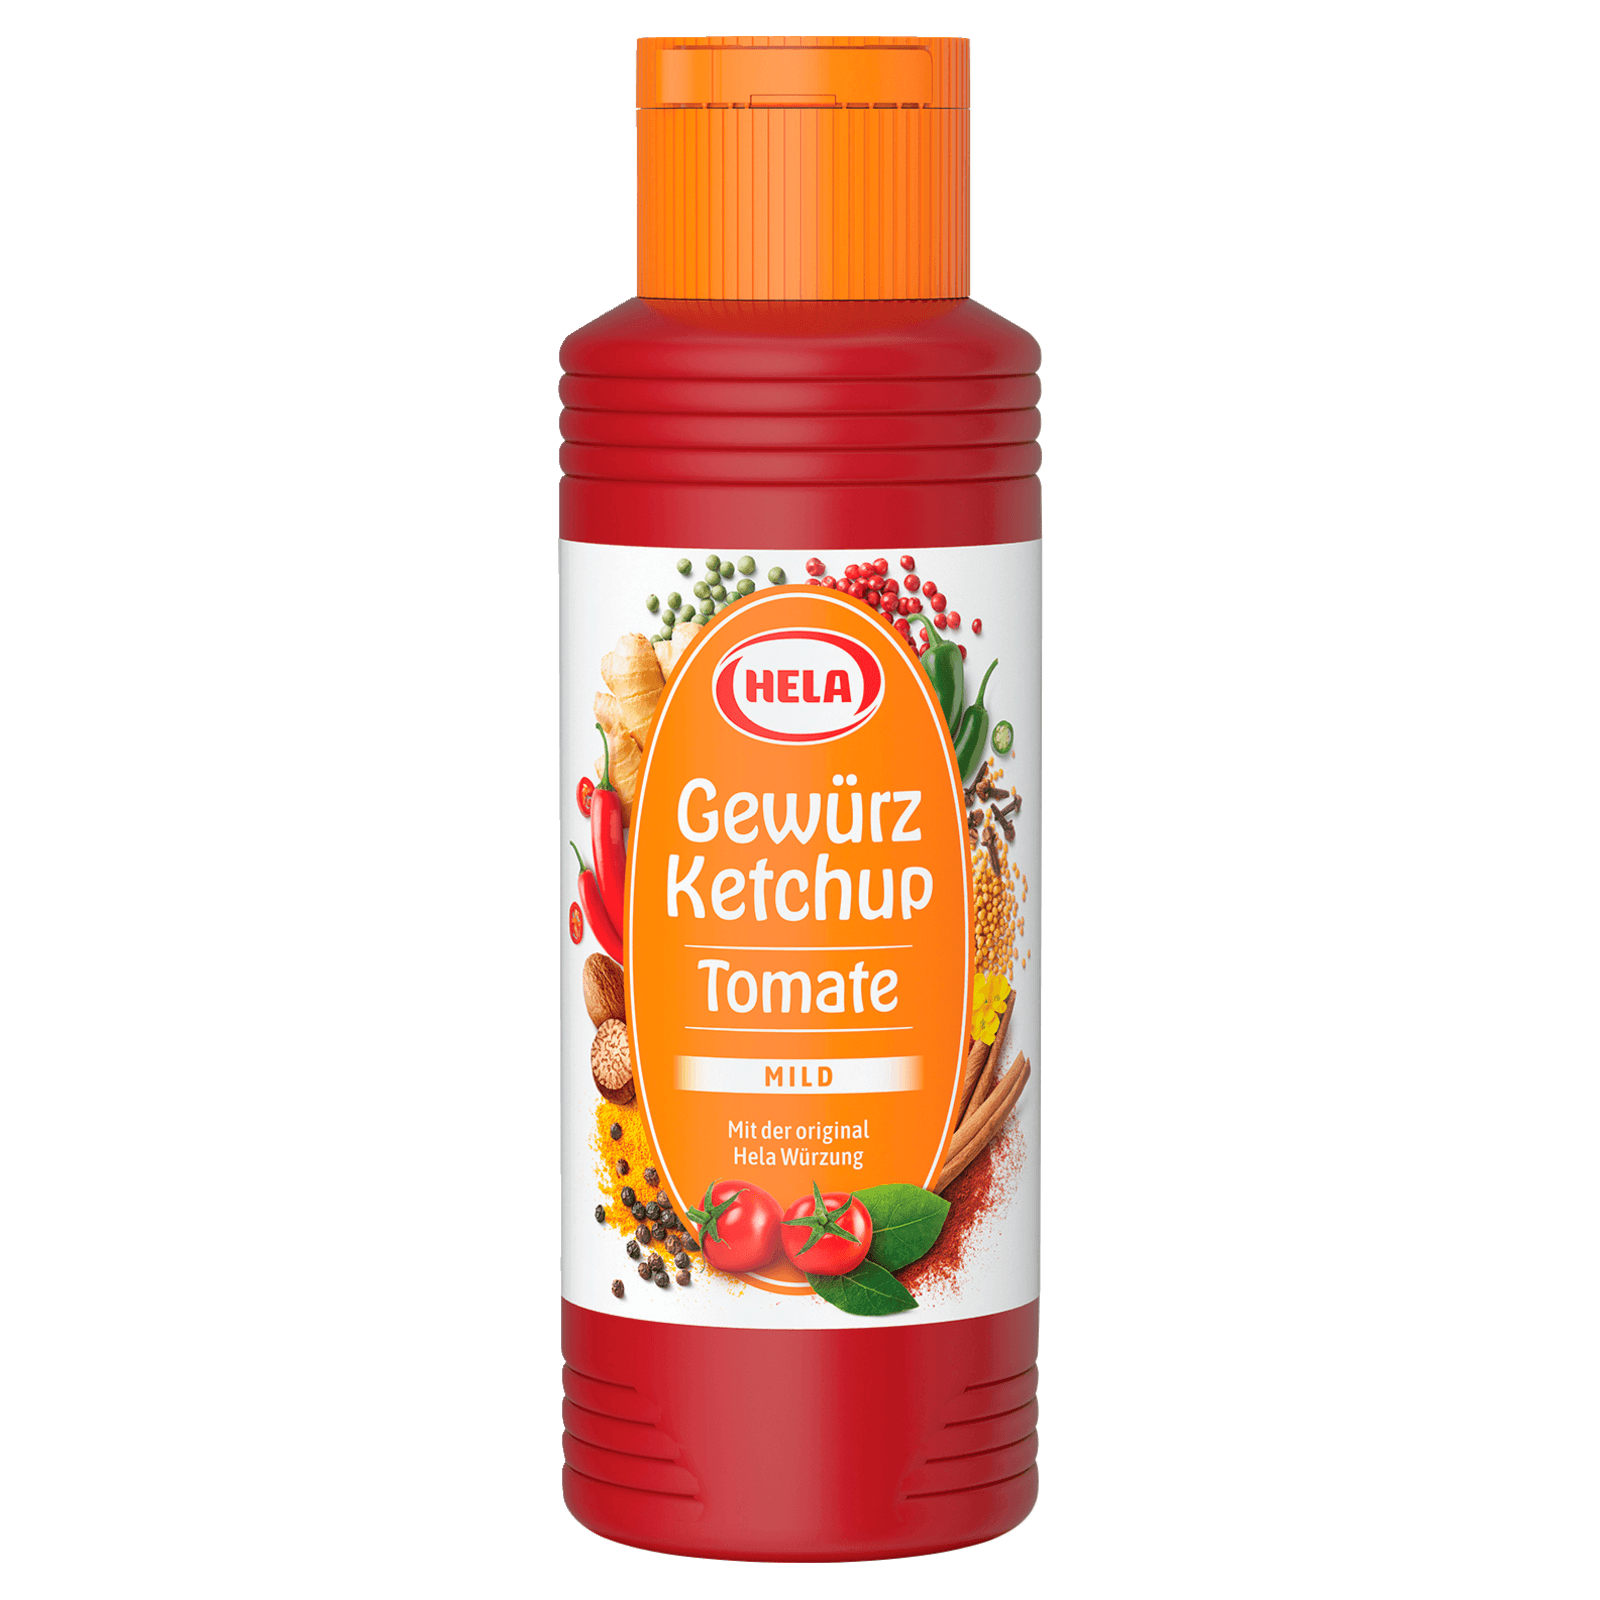 Hela Gewürzketchup Tomate mild 300ml bei REWE online bestellen!